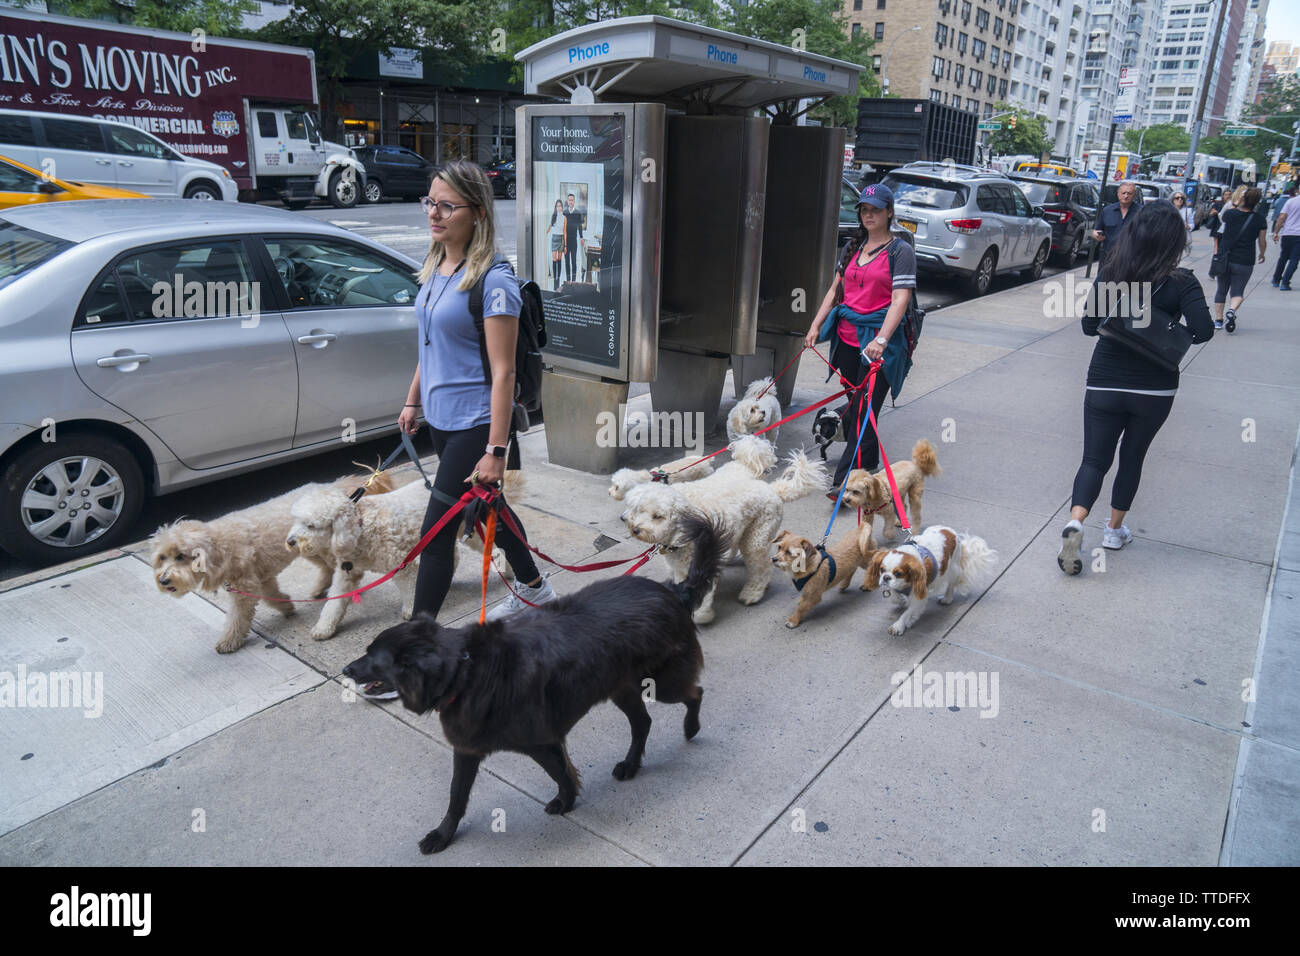 Professional cane camminare può essere un business lucrativo nell'Upper East Side di Manhattan dove i canini sono membri a pieno titolo della famiglia. 3° Avenue vicino a 67t Foto Stock